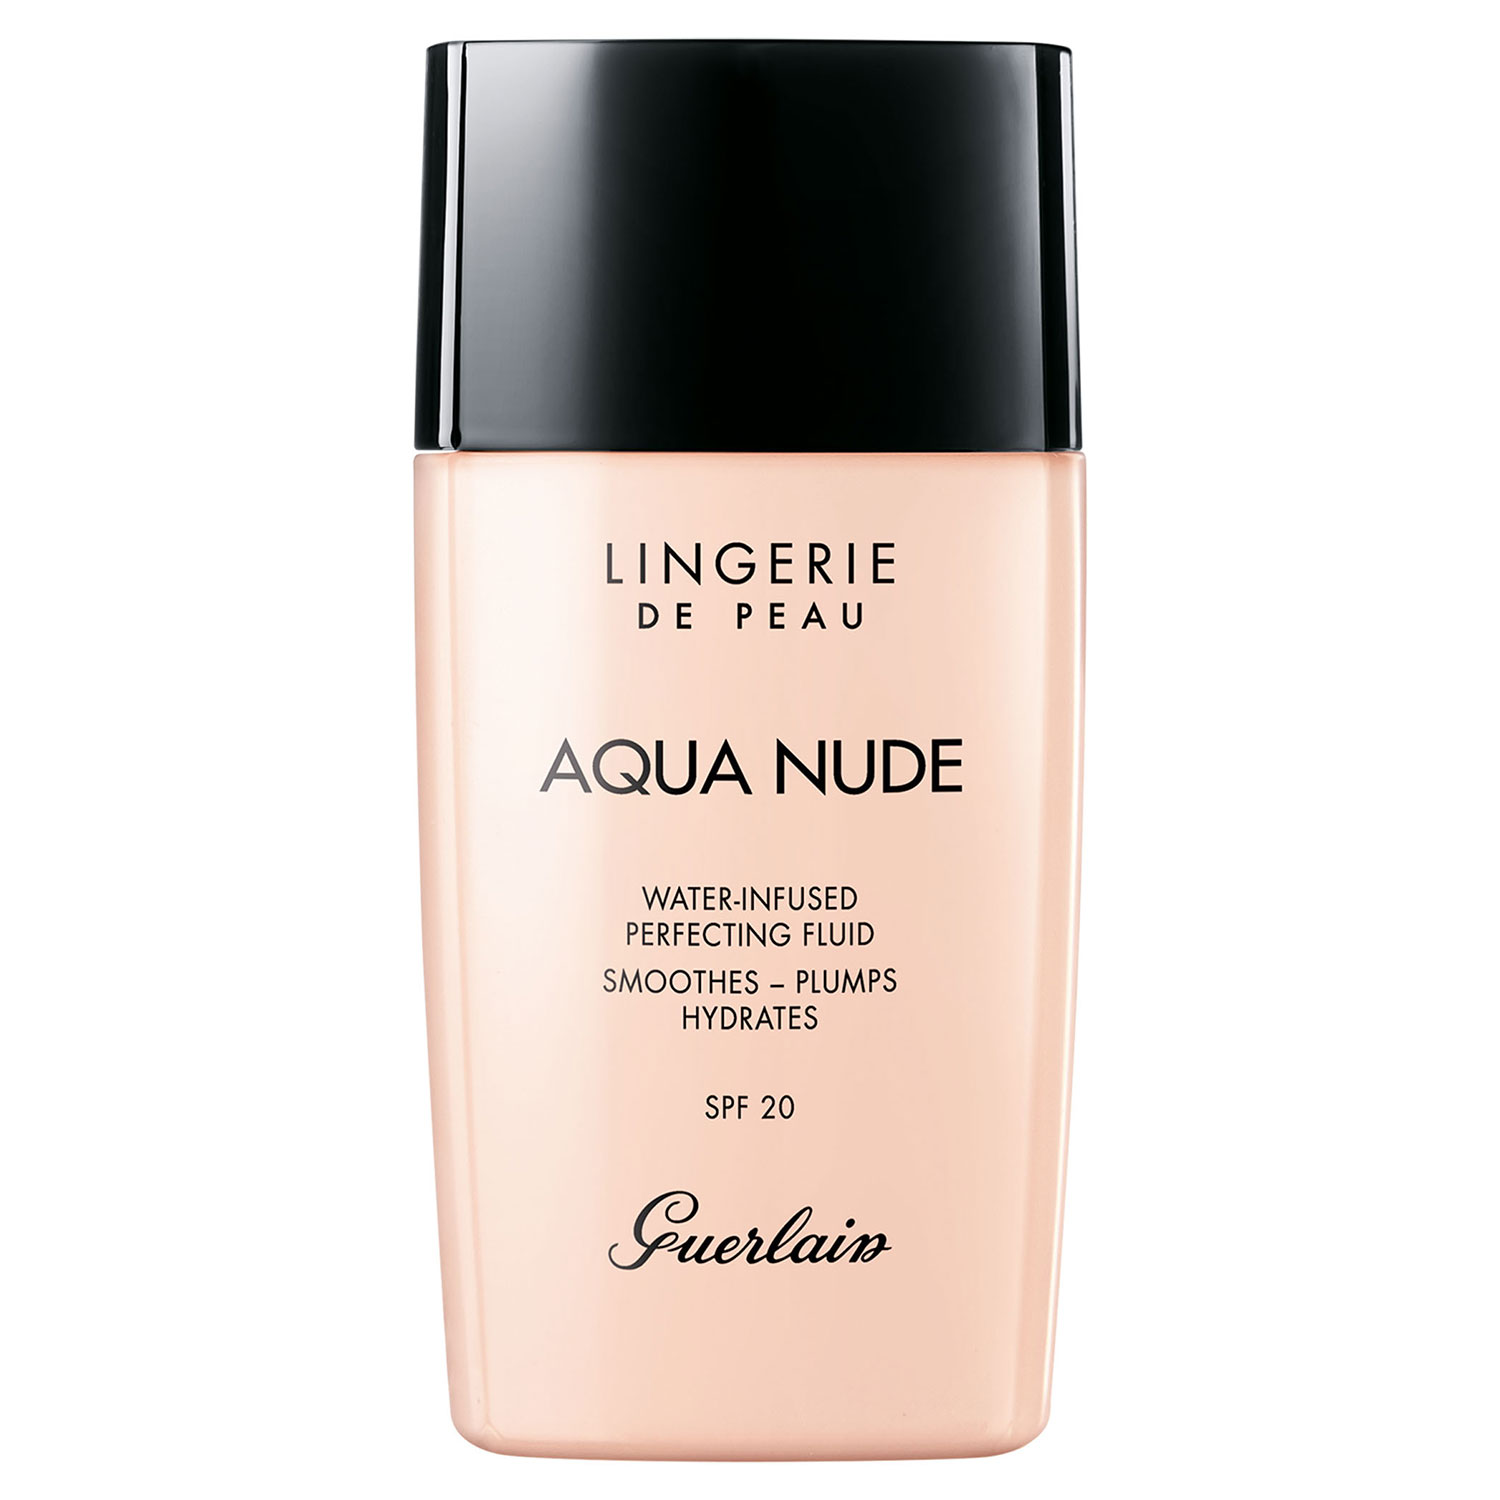 Guerlain Lingerie de Peau Aqua Nude Foundation, 30ml-01W Very Light Warm